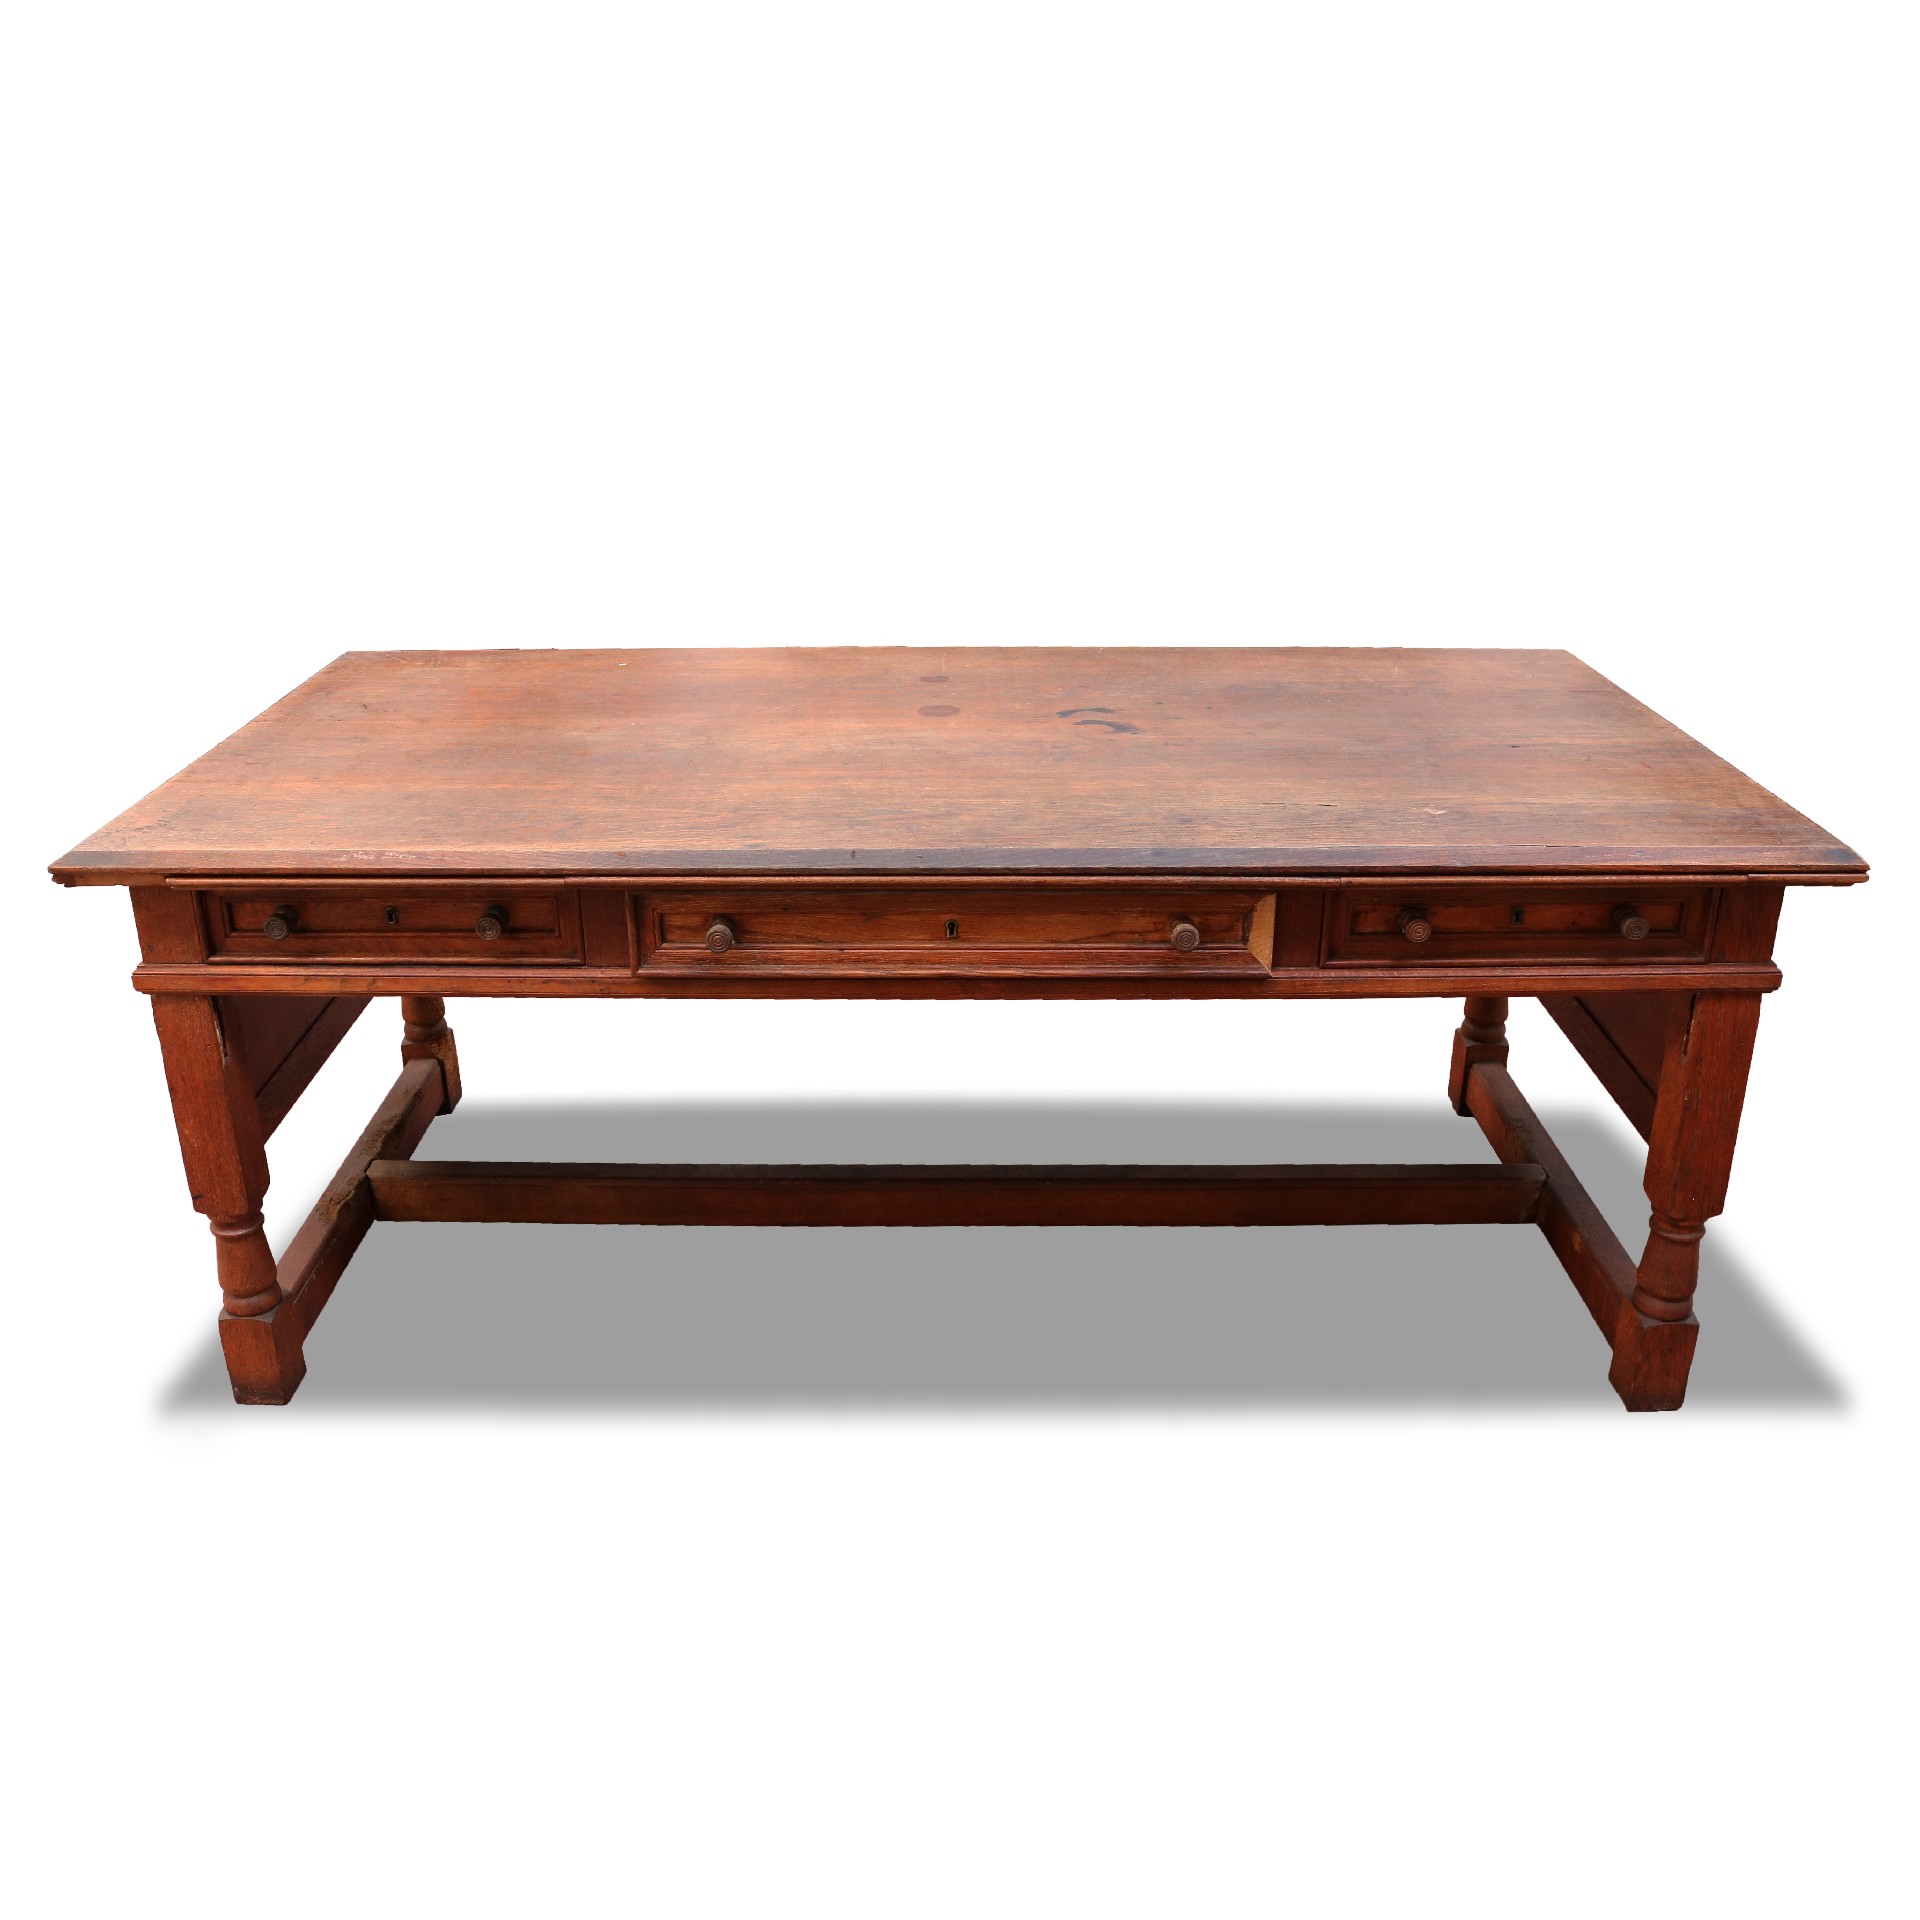 Grande scrivania in legno. - Scrivanie Antiche - Mobili antichi - Prodotti - Antichità Fiorillo